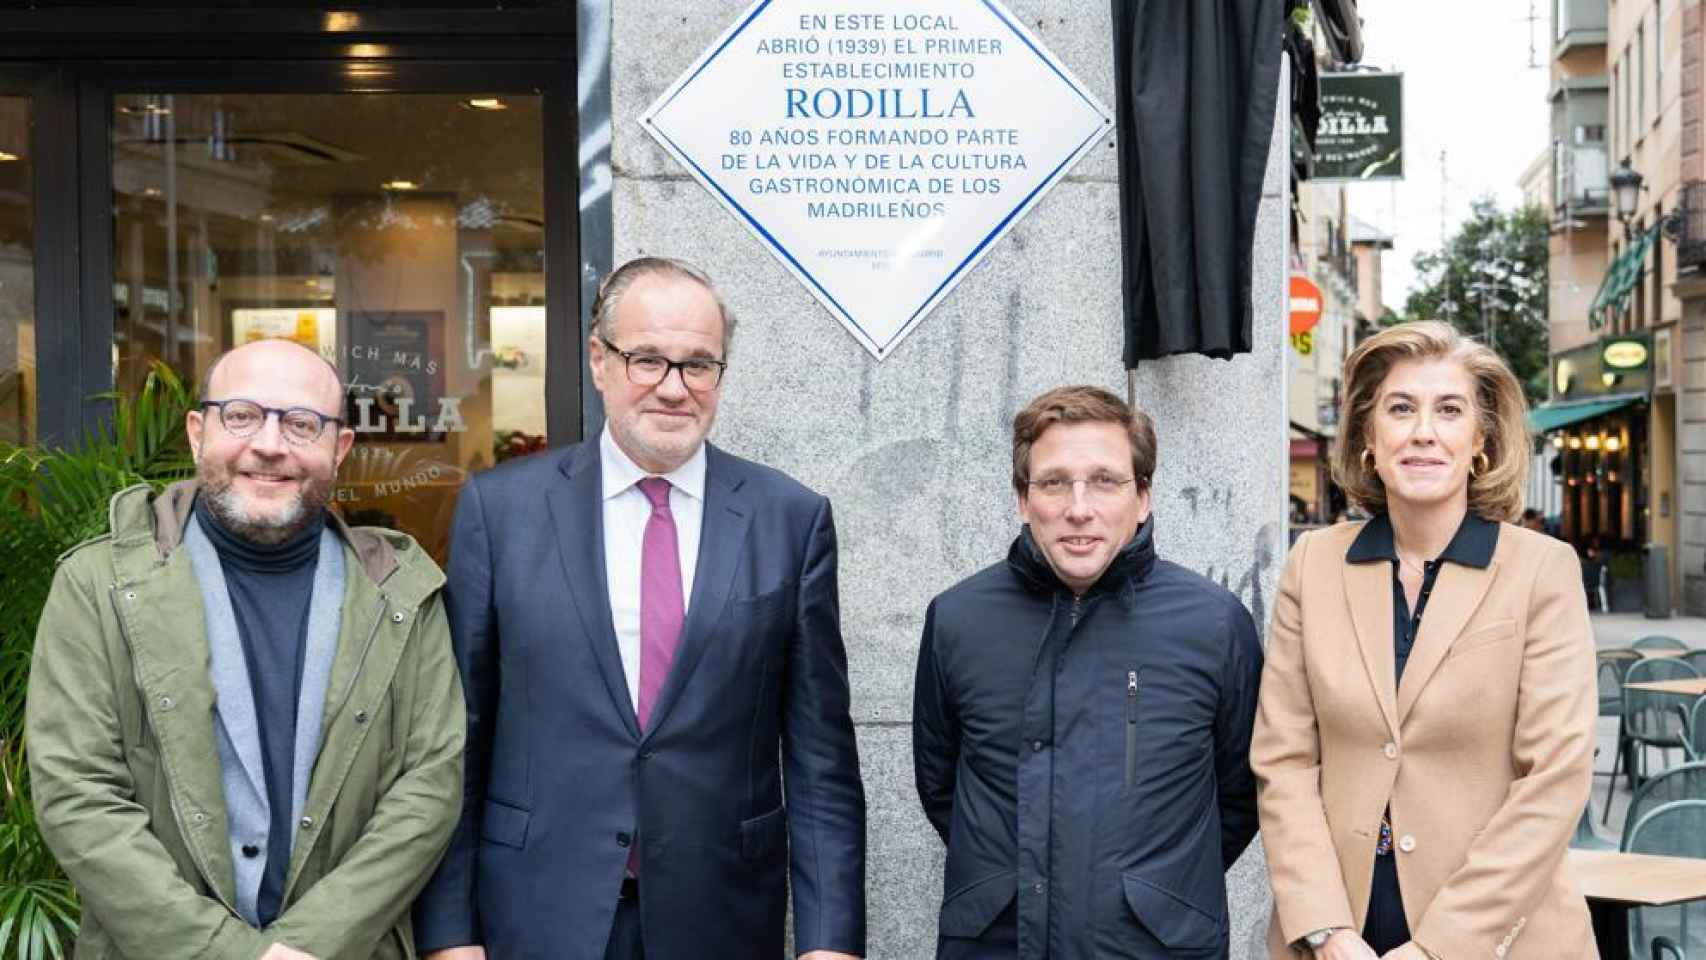 El alcalde de Madrid, José Luis Martínez-Almeida, inaugura la placa conmemorativa de Rodilla en su 80 aniversario.